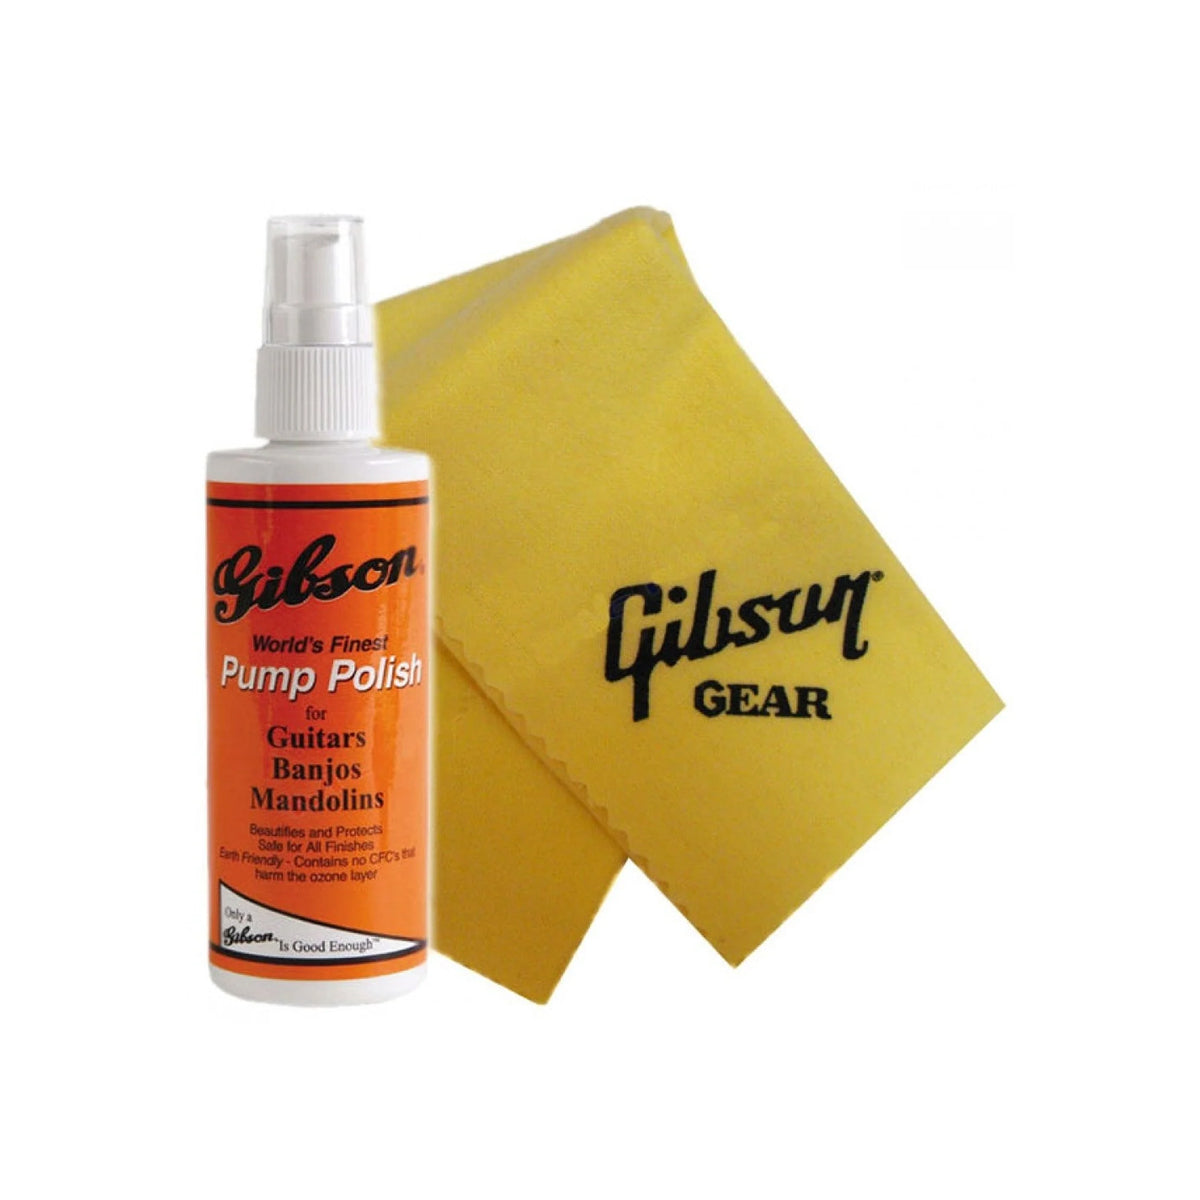 Gibson AIGG-950 Pump Polish And Standard Polish Cloth Combo